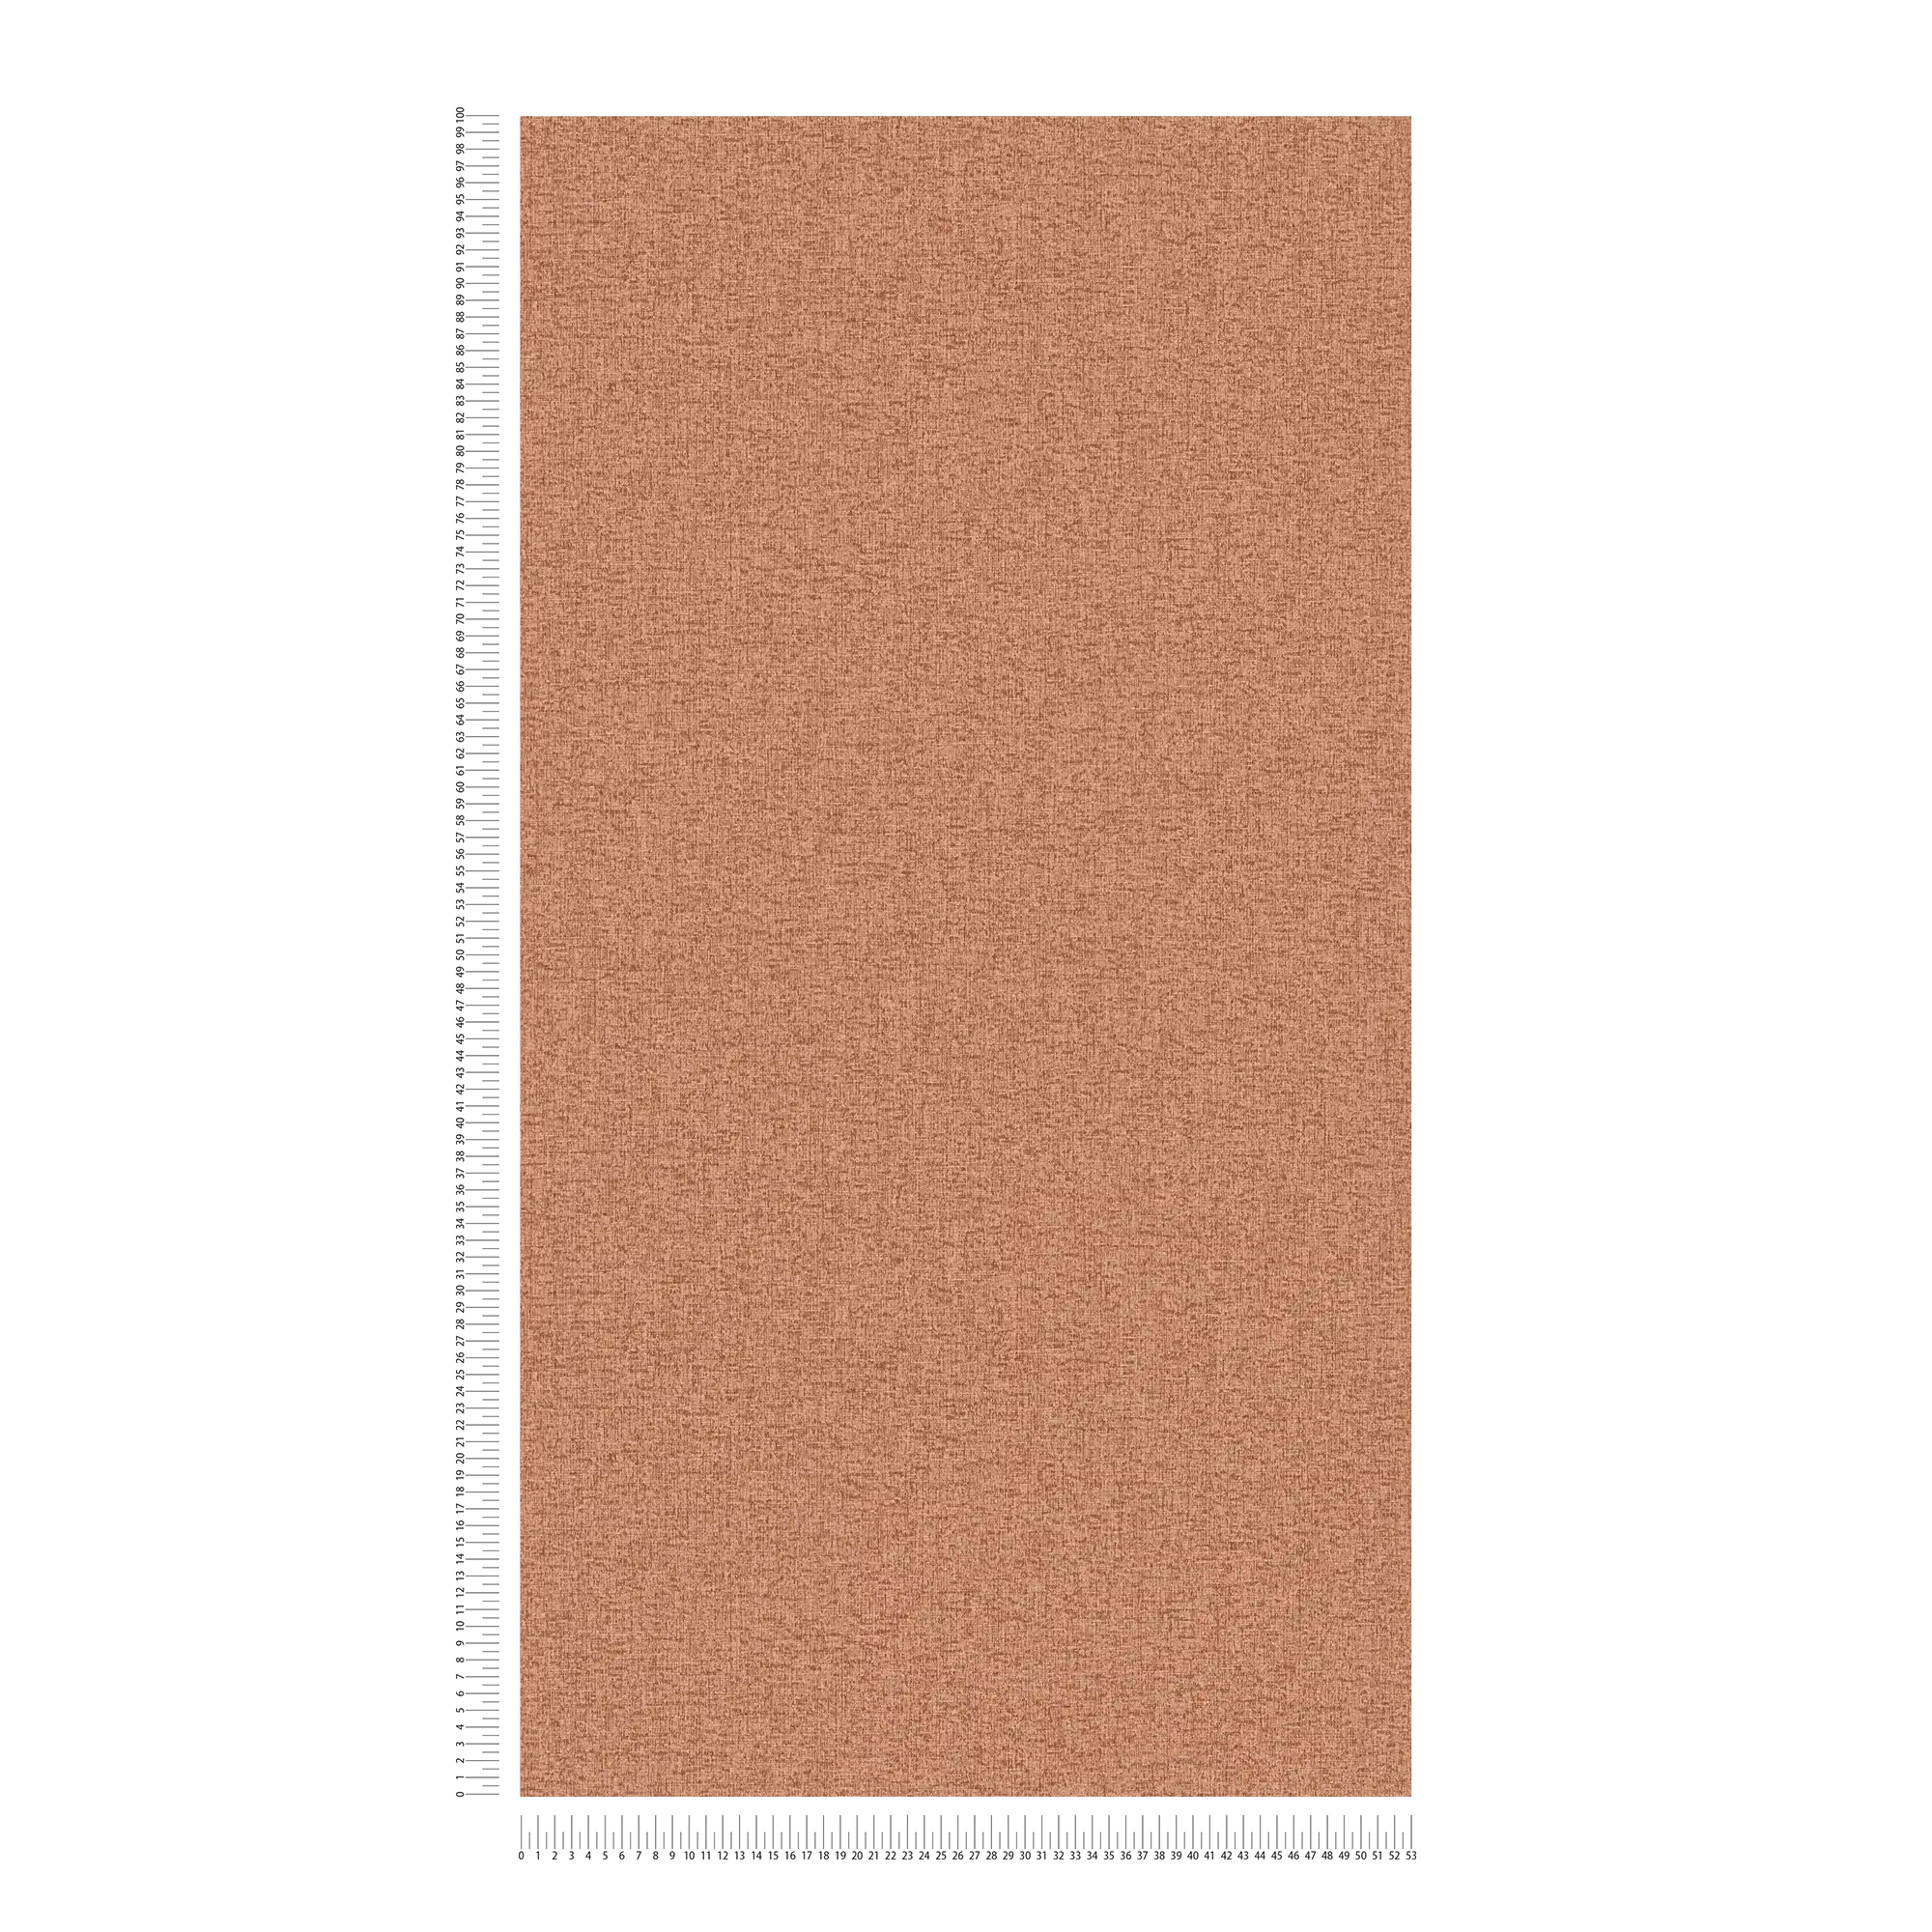             Plain non-woven wallpaper with fabric structure, matt - red, orange
        